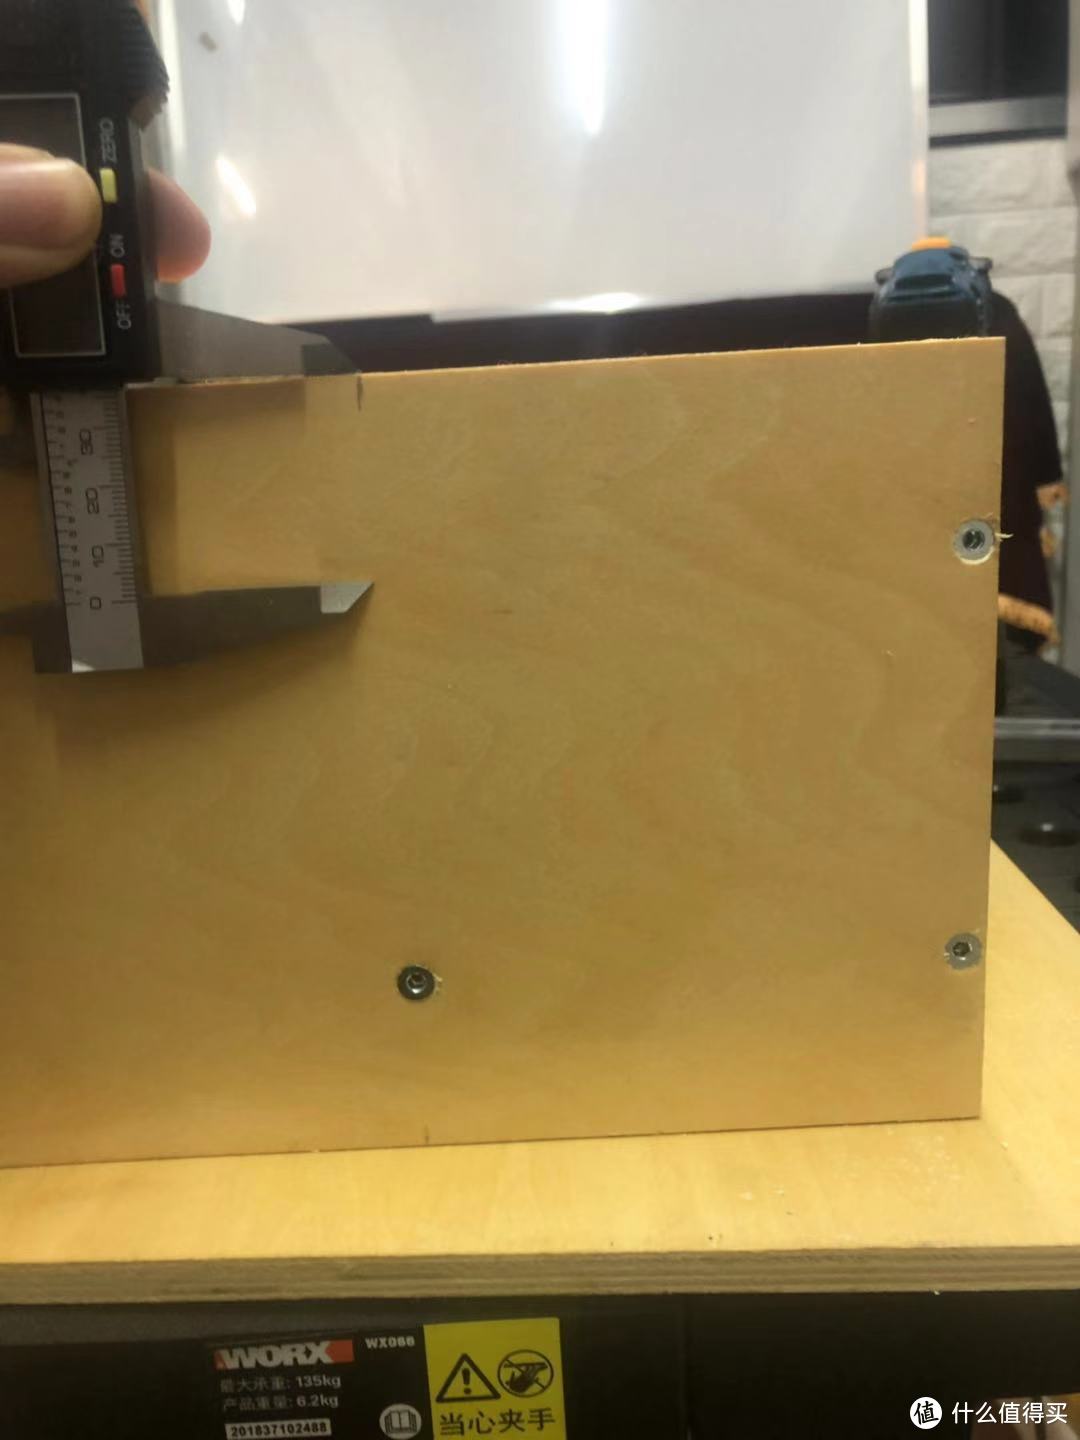 螺丝打孔位置可以用卡尺固定，然后就能确保每个孔位都在同一直线上